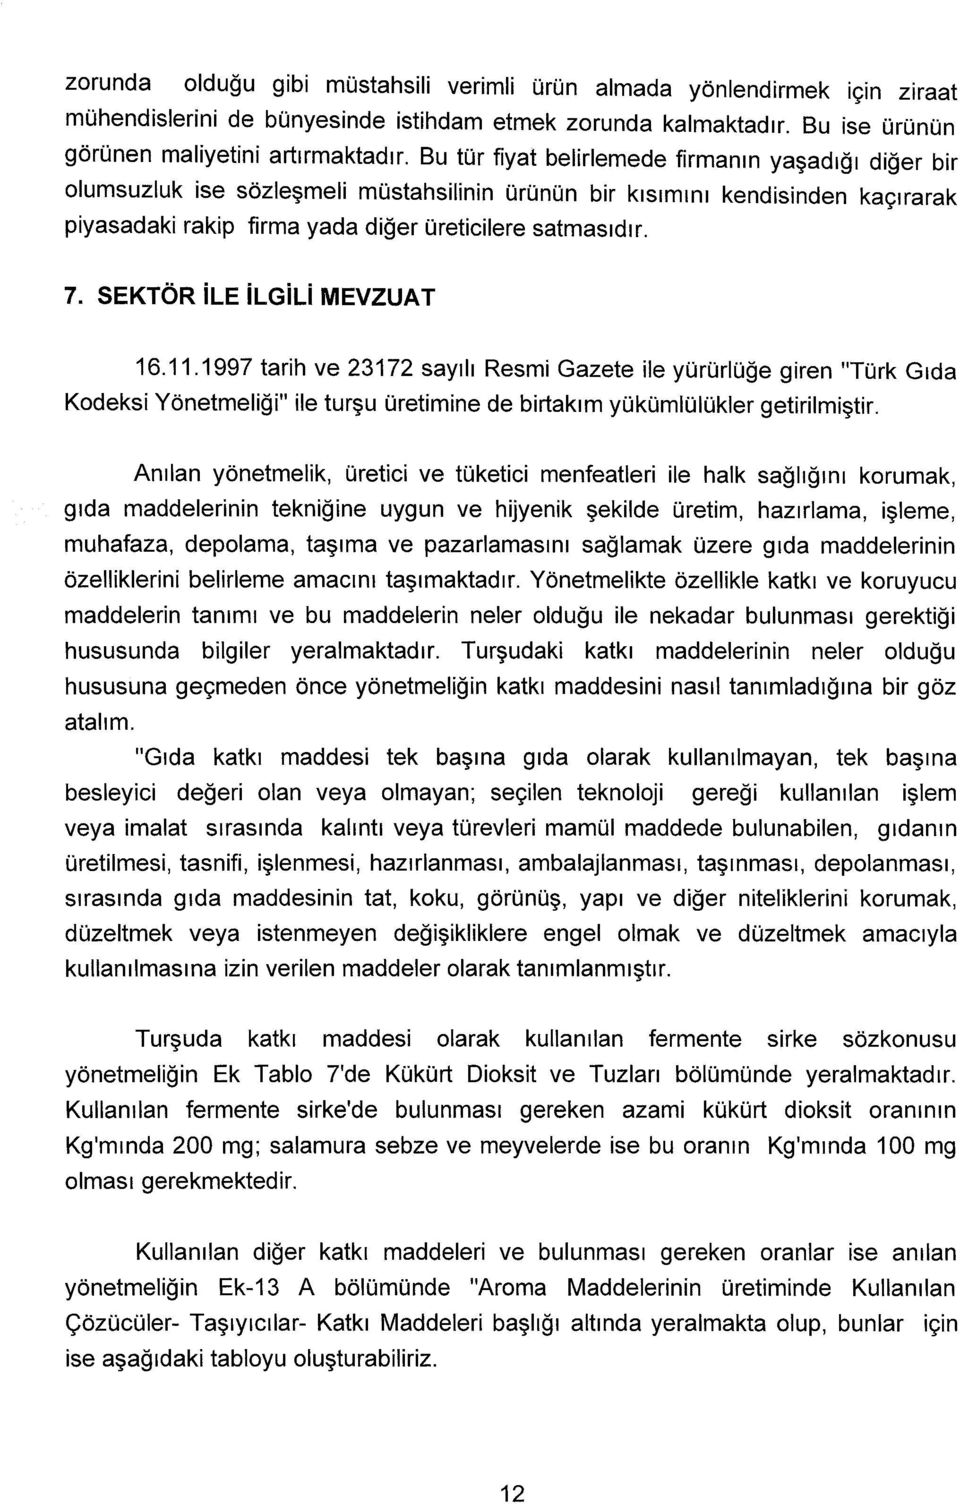 SEKTÖR ile ilgili MEVZUAT 16.11.1997 tarih ve 23172 sayılı Resmi Gazete ile yürürlüğe giren "Türk Gıda Kodeksi Yönetmeliği" ile turşu üretimine de birtakım yükümlülükler getirilmiştir.